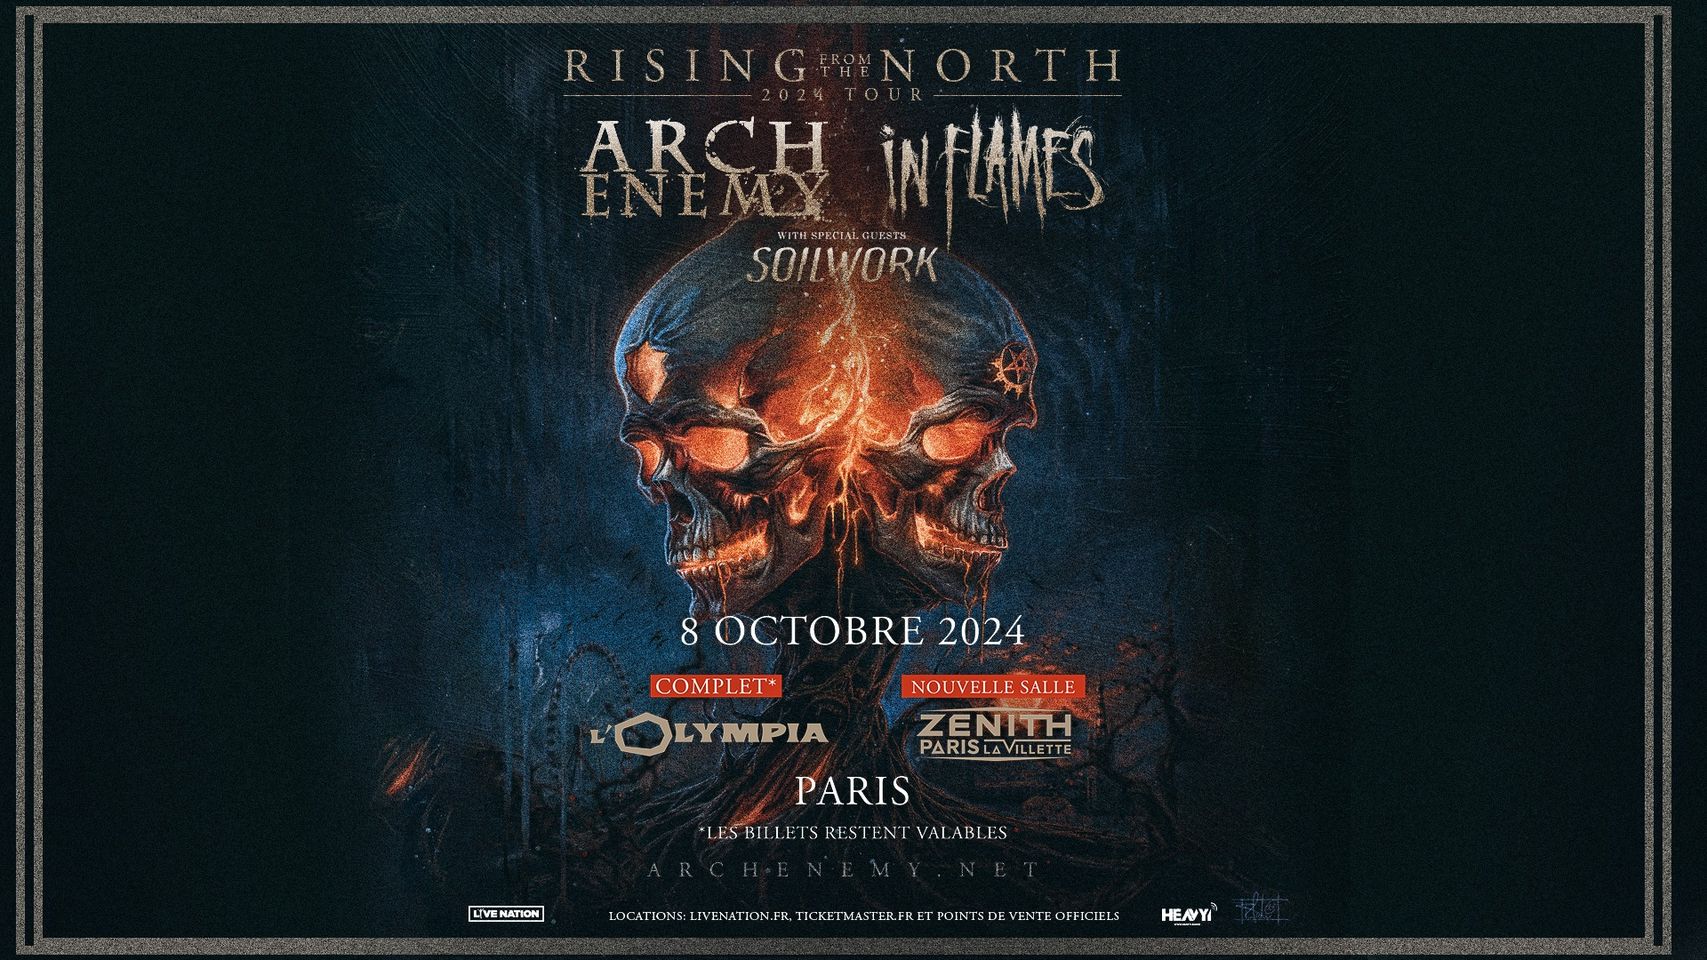 Arch Enemy - In Flames in der Zenith Paris Tickets